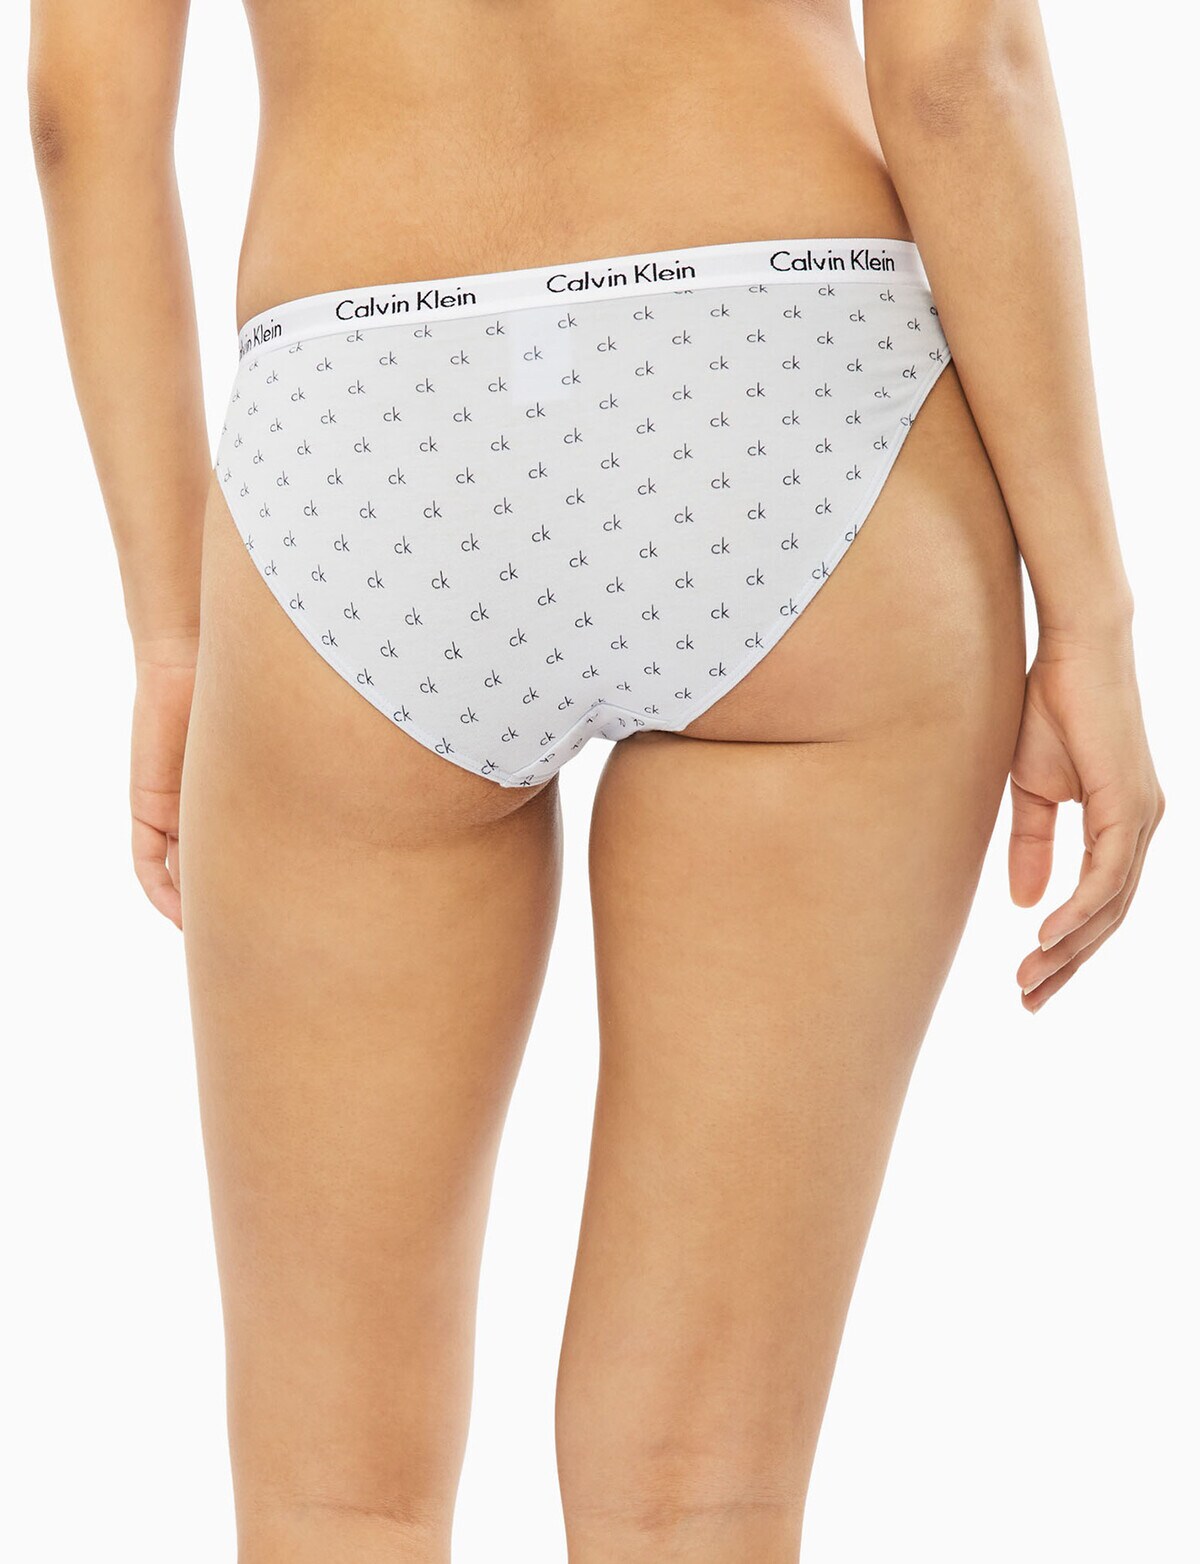 Calvin Klein - Ladies Underwear reviews in Misc - ChickAdvisor